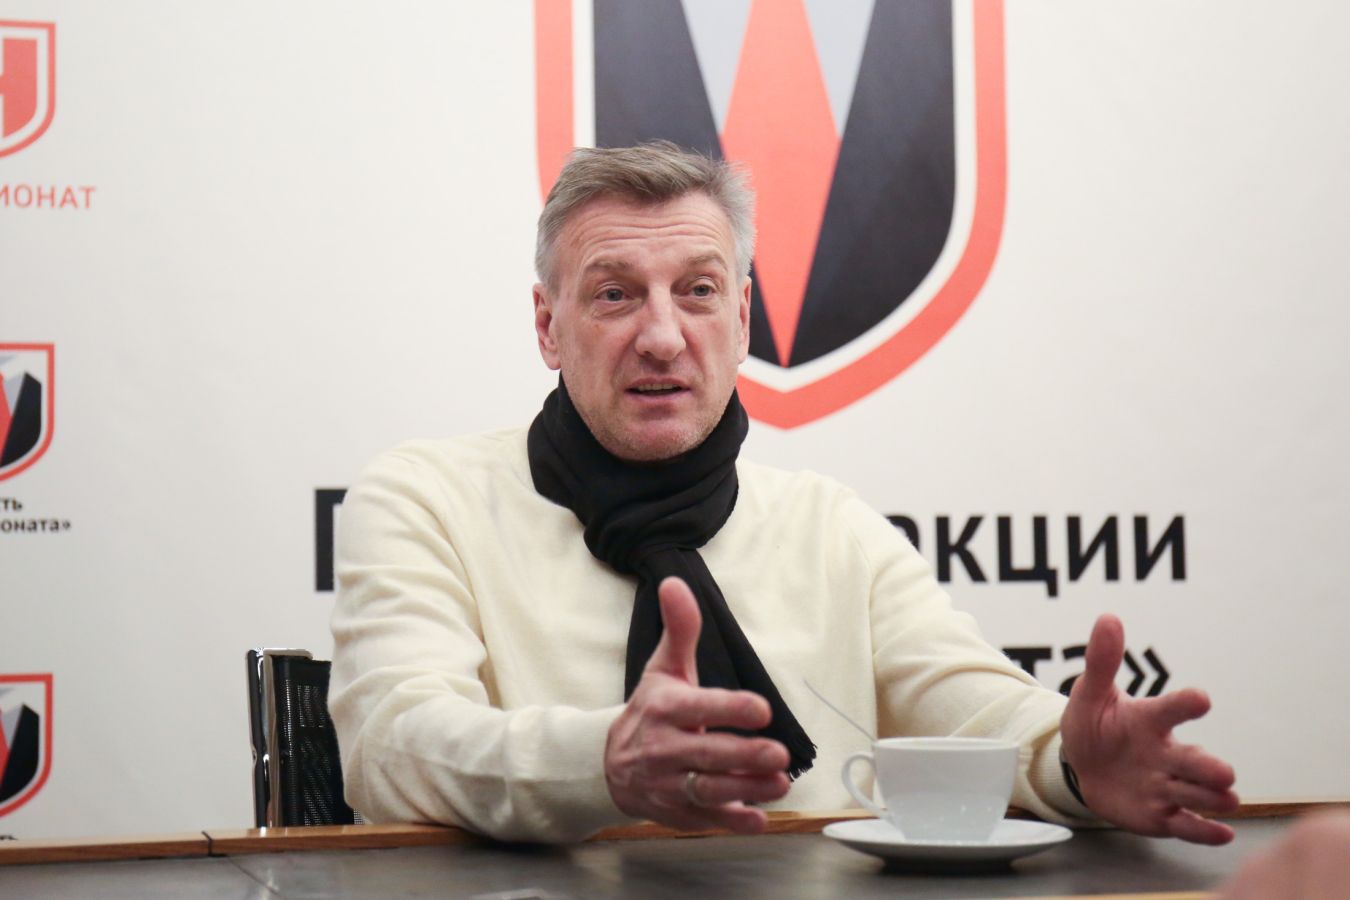 Кузнецов: после ухода Юрана «Химки» развалились, им будет очень сложно остаться в РПЛ